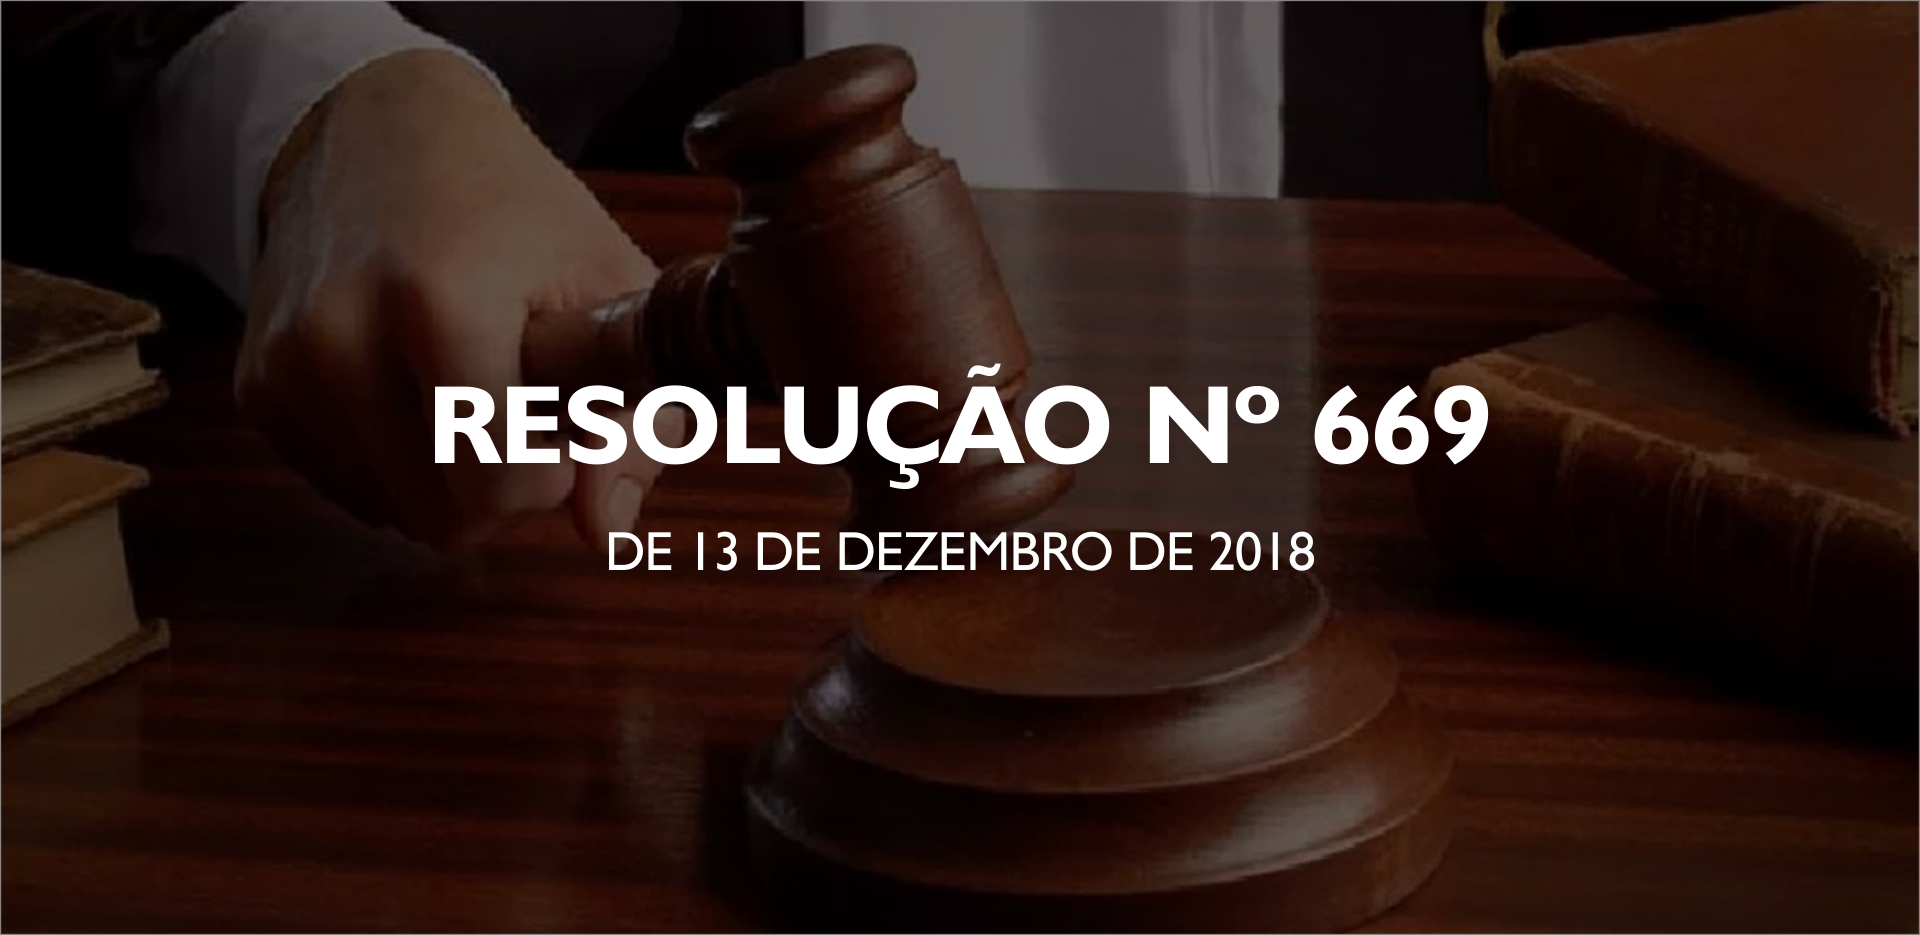 RESOLUÇÃO Nº 669, DE 13 DE DEZEMBRO DE 2018